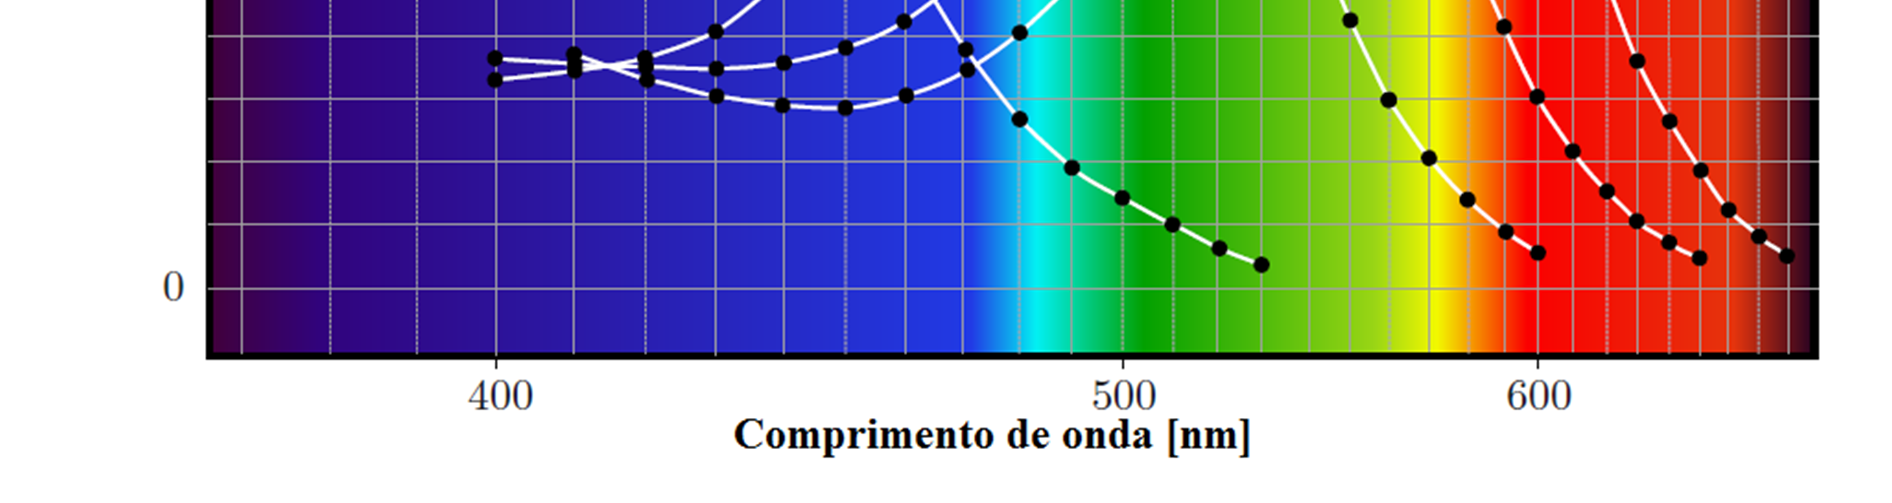 FIGURA 1.5 Sensibilidade de cones e bastonetes com relação ao comprimento de onda. Extraído de [2] com tradução para português.